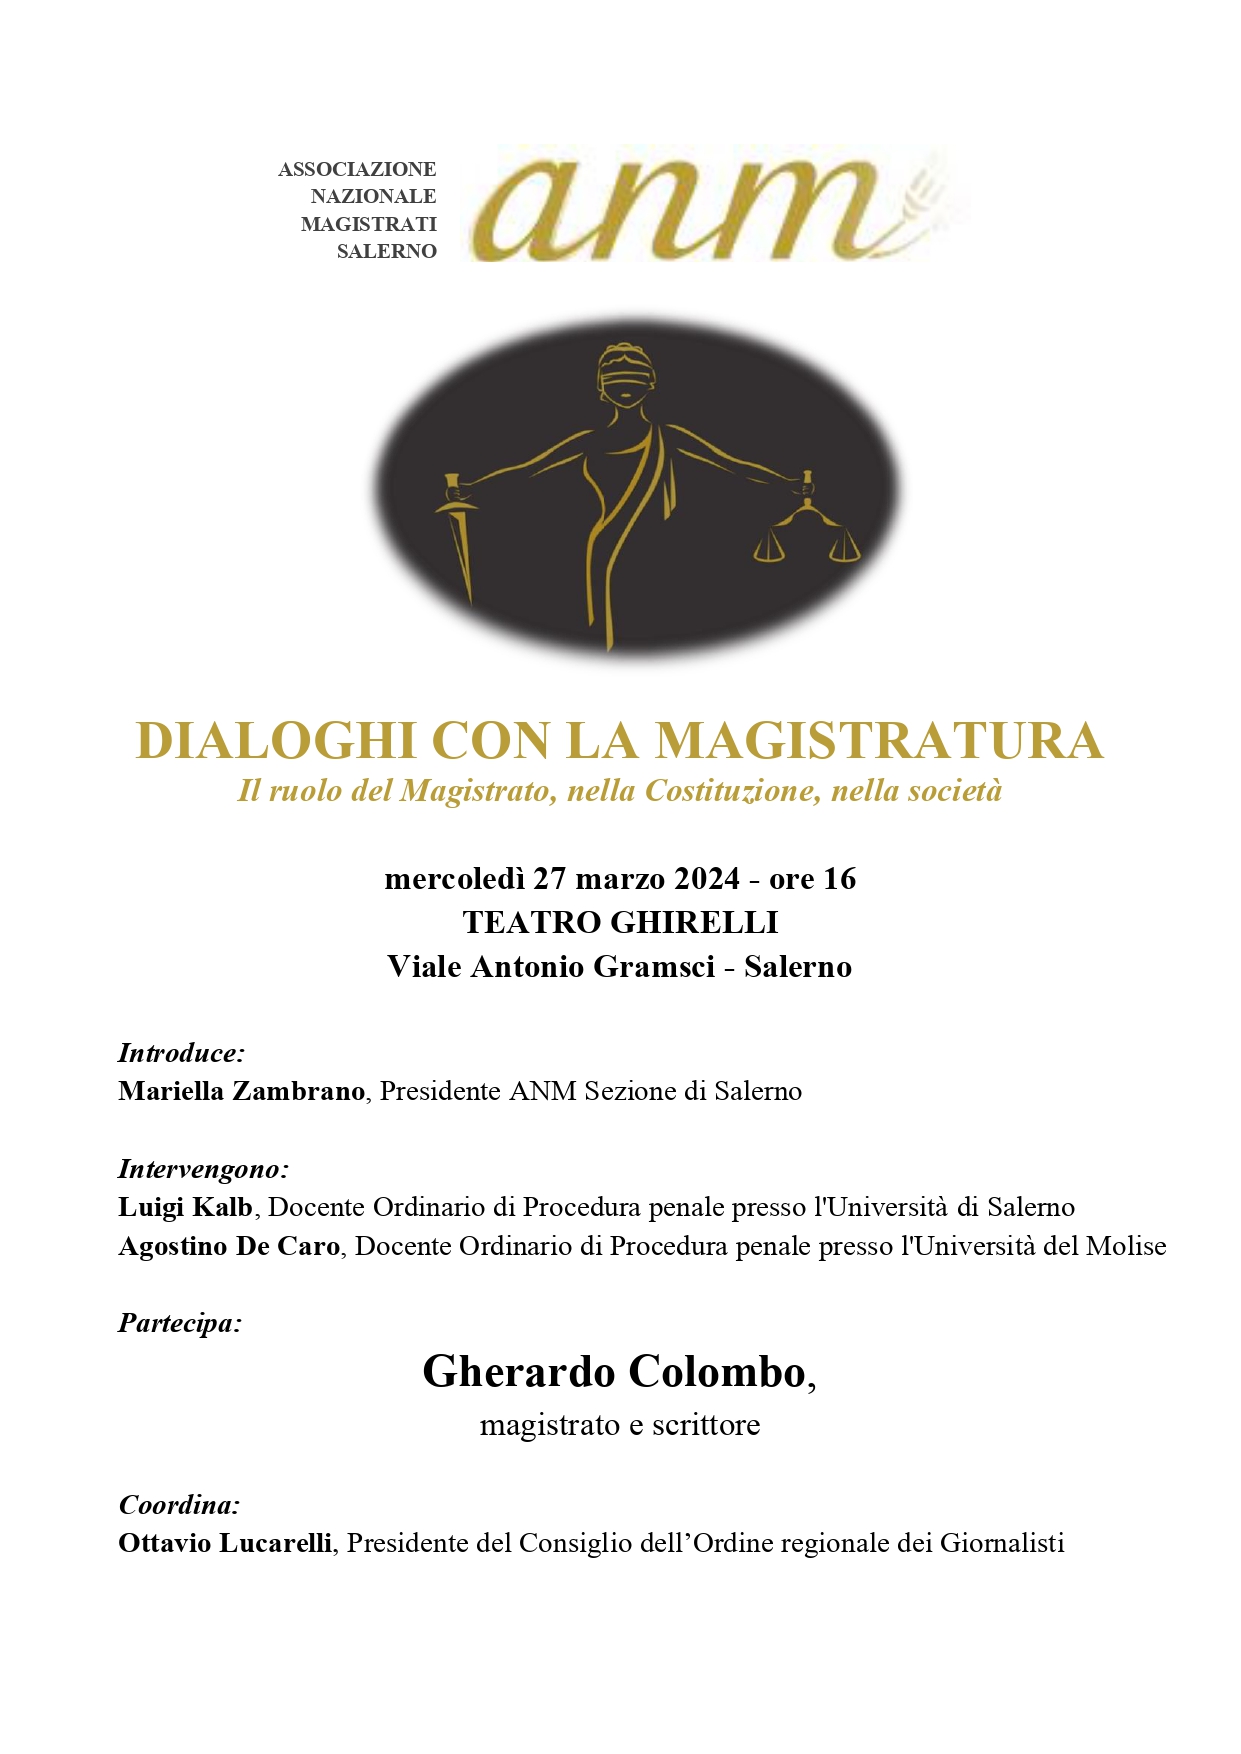 Salerno: Cittadella Giudiziaria, convegno “Dialoghi con la magistratura”, conferenza stampa